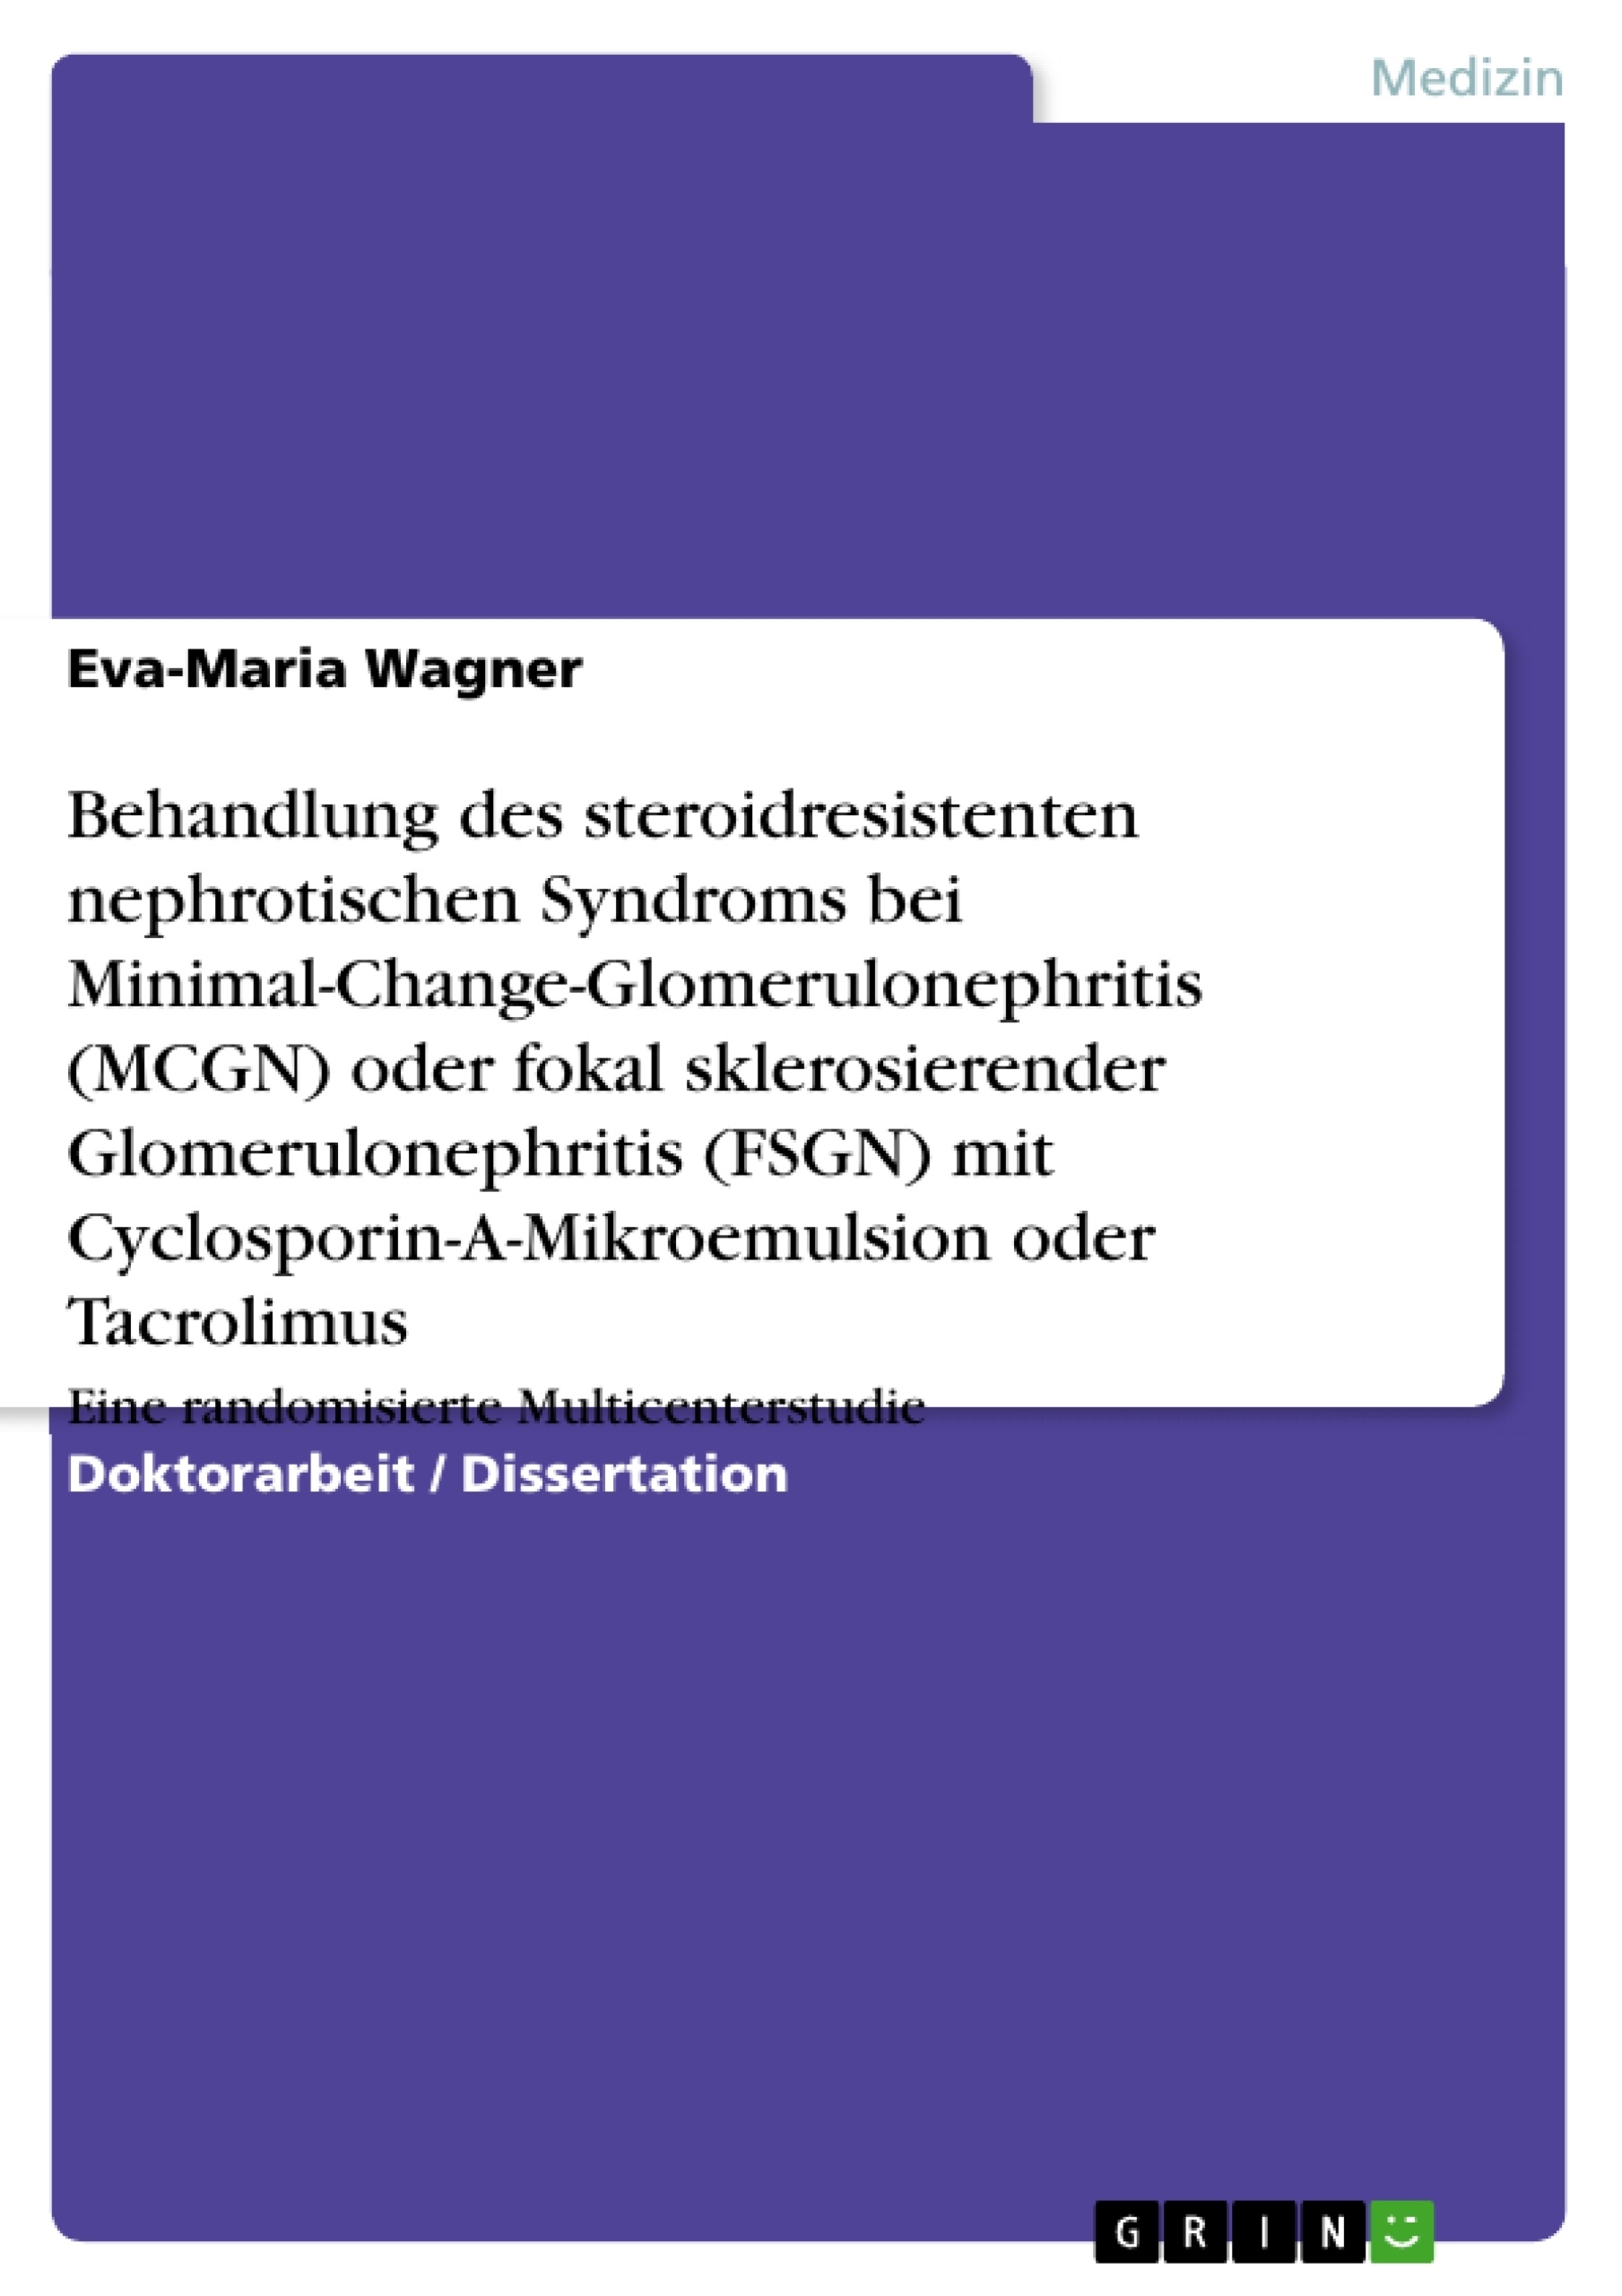 Title: Behandlung des steroidresistenten nephrotischen Syndroms bei Minimal-Change-Glomerulonephritis (MCGN) oder fokal sklerosierender Glomerulonephritis (FSGN) mit Cyclosporin-A-Mikroemulsion oder Tacrolimus